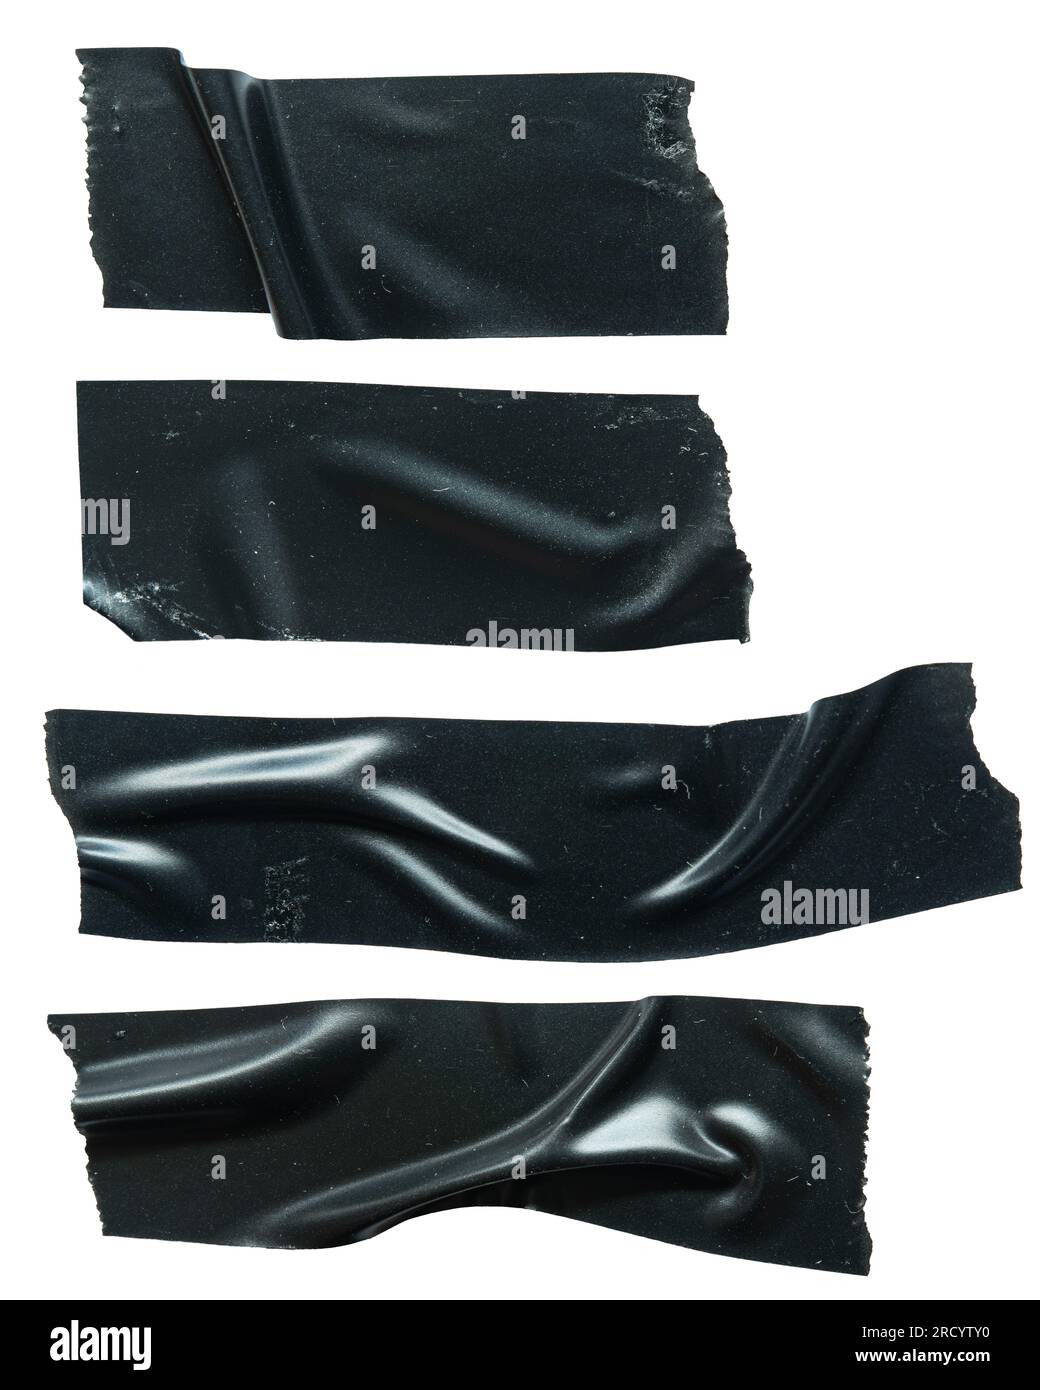 Schwarzes Isolierband auf weißem Hintergrund Stockfotografie - Alamy